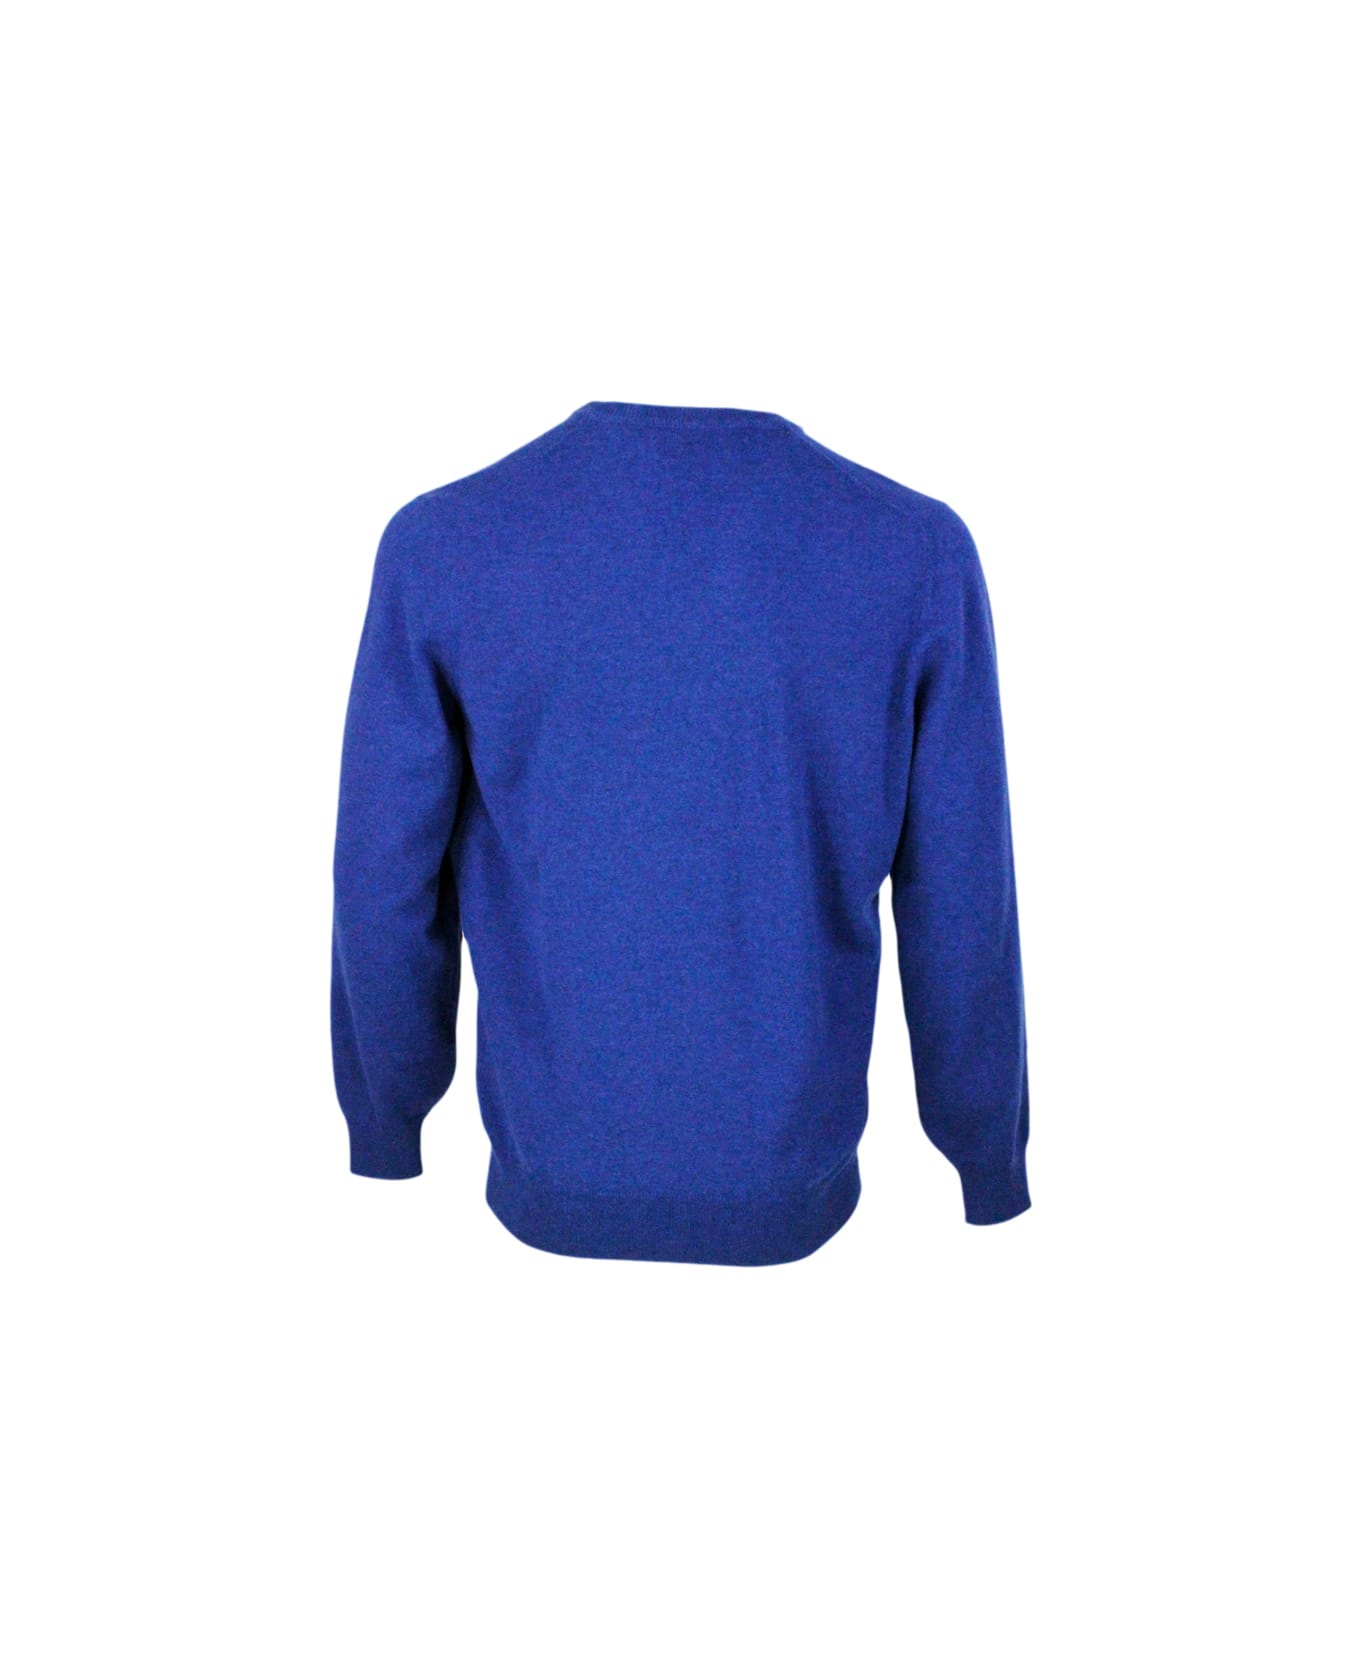 Brunello Cucinelli 100% Fine Cashmere V-neck Sweater With Contrasting Profile - Blu royal